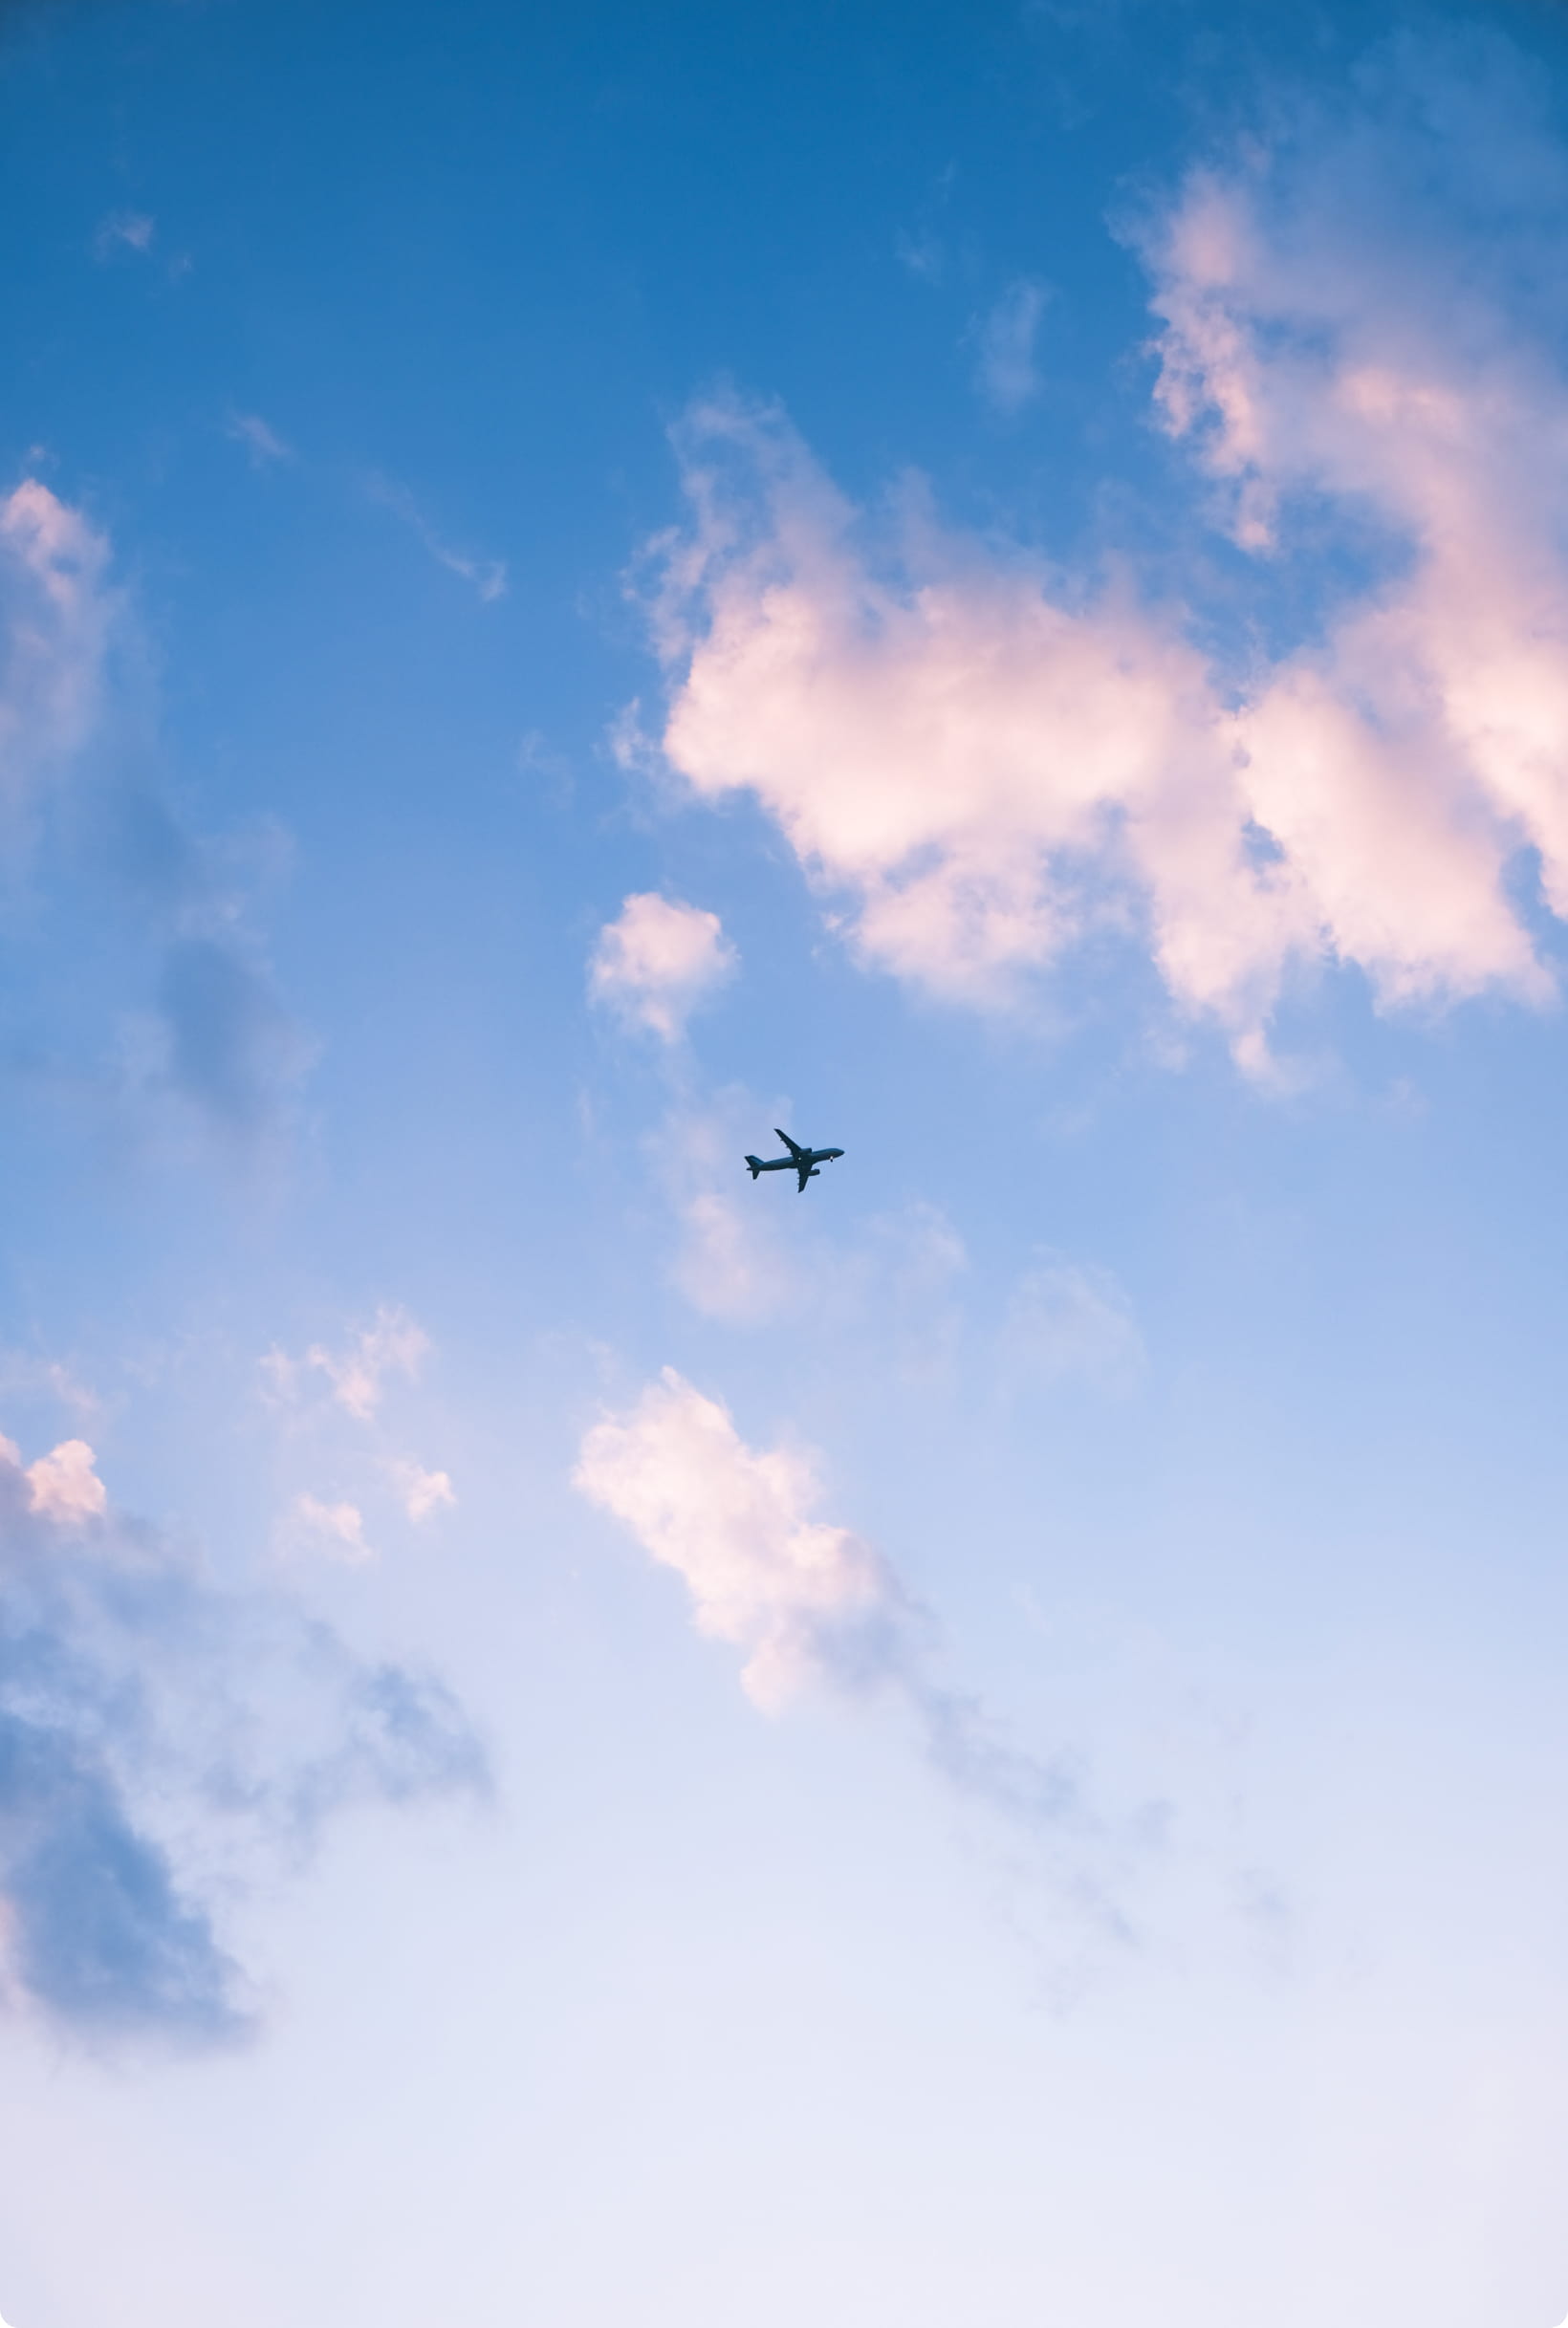 メインビジュアル画像。雲が少しかかっている青空の中心に小さな飛行機が写っている。